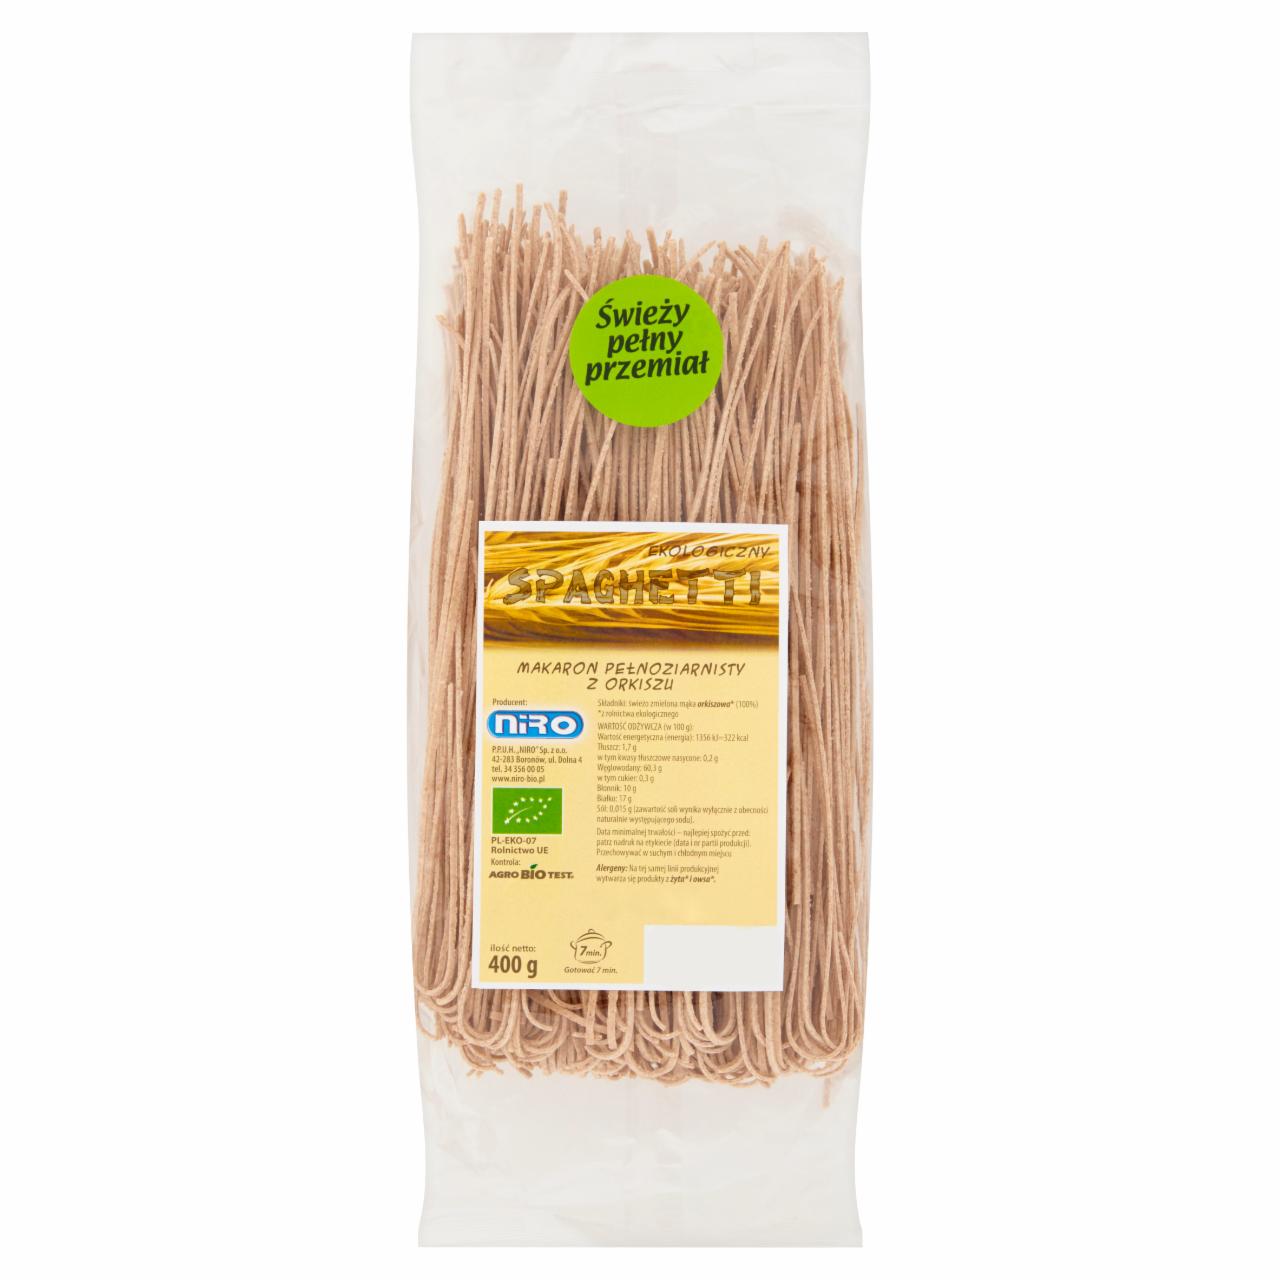 Zdjęcia - Spaghetti Makaron pełnoziarnisty z orkiszu ekologiczny 400 g